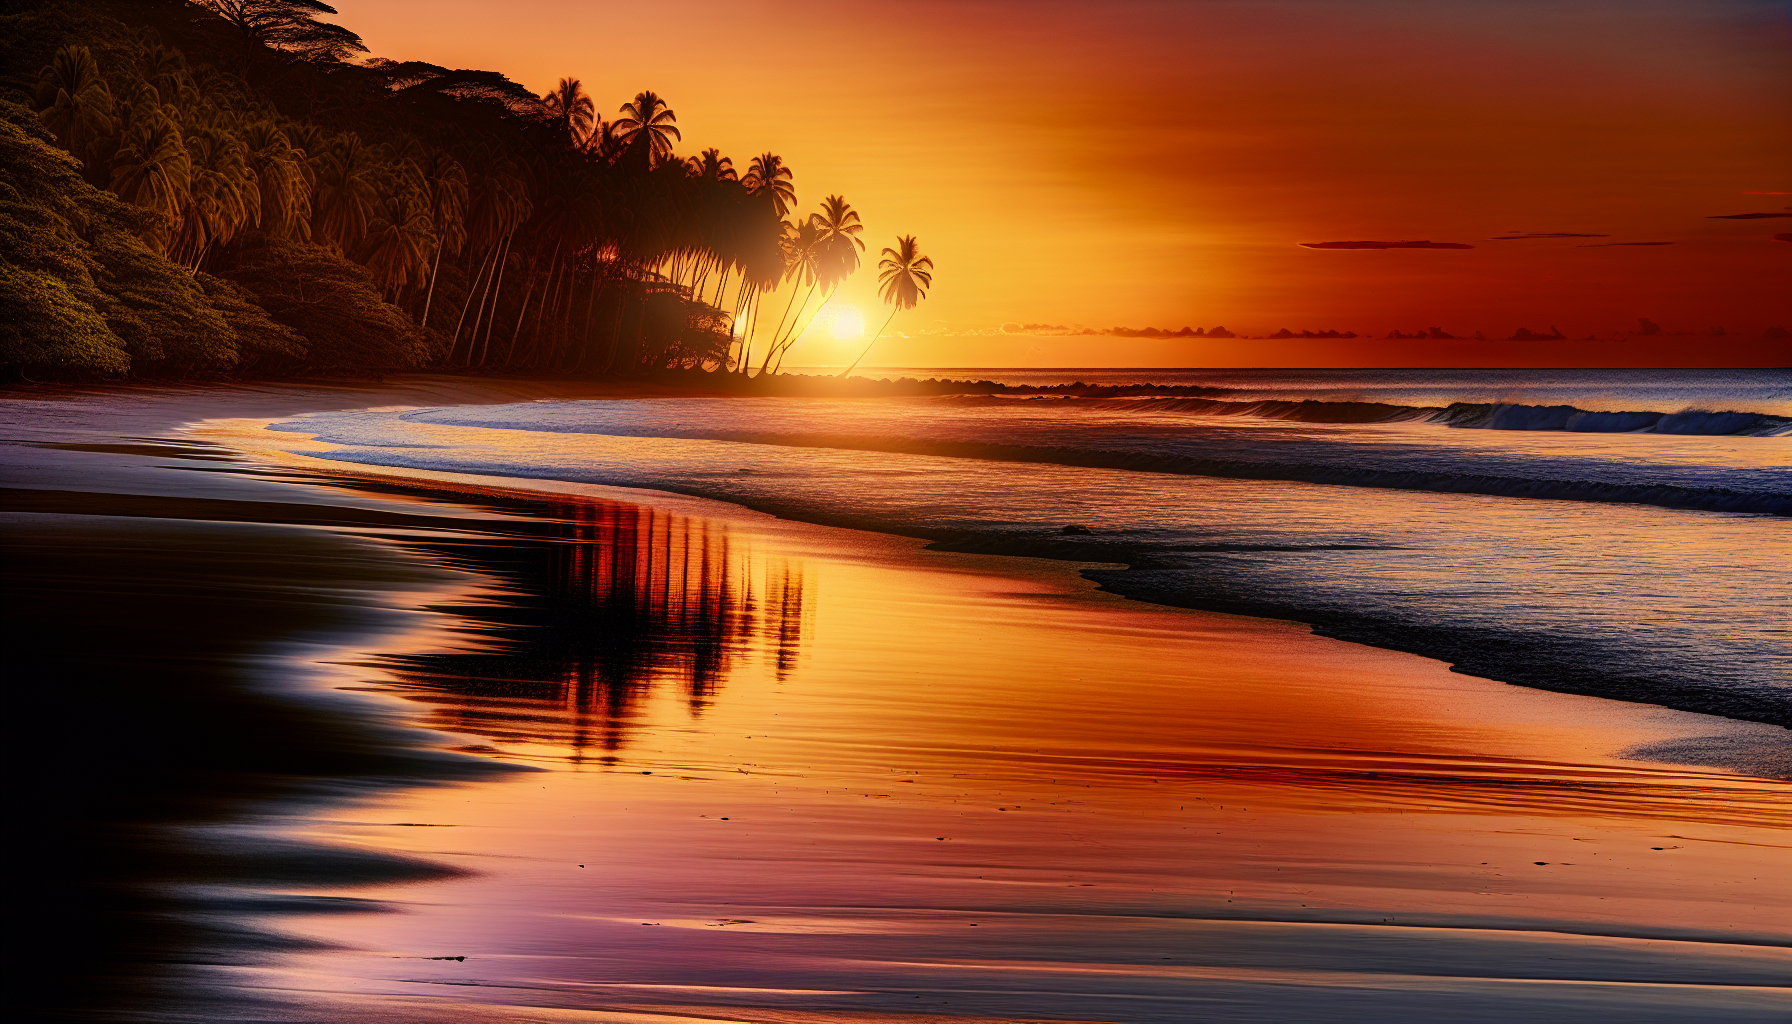 Sunset view of Playa Ventanas beach